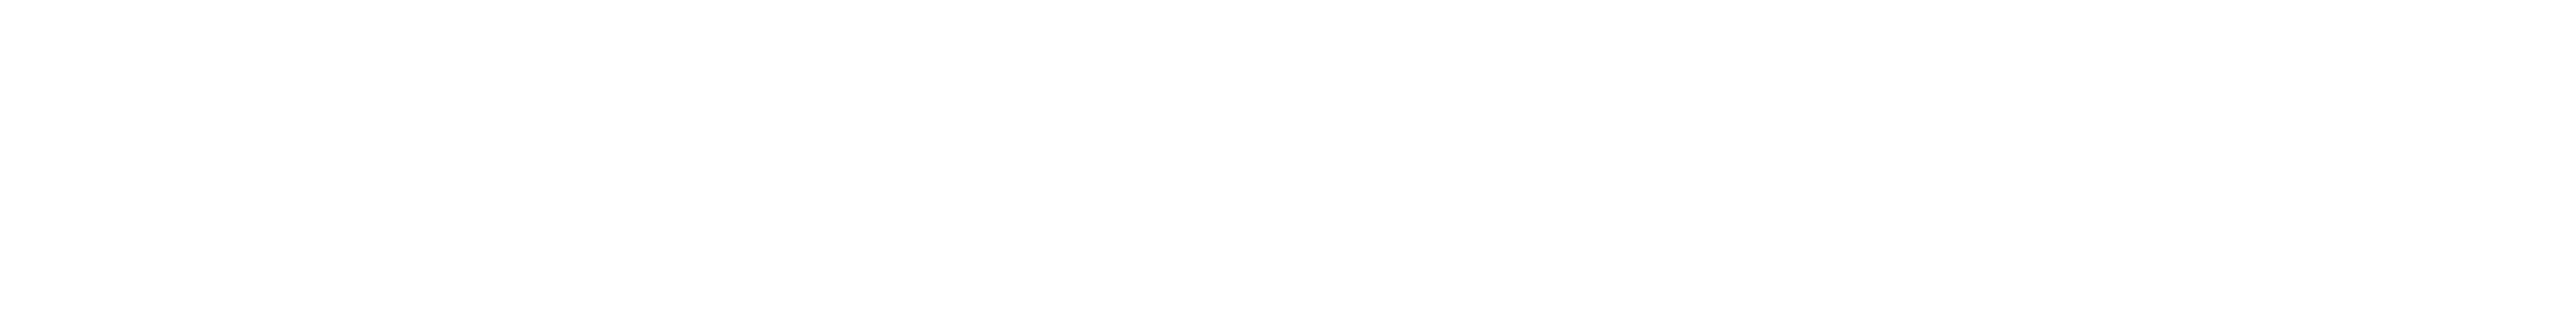 GTYTech logo